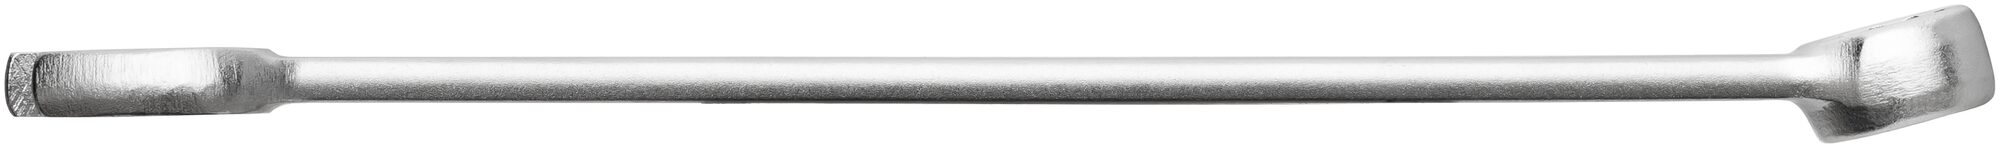 HAZET Ring-Maulschlüssel 600N-15 · Außen Doppel-Sechskant-Tractionsprofil · 15 mm